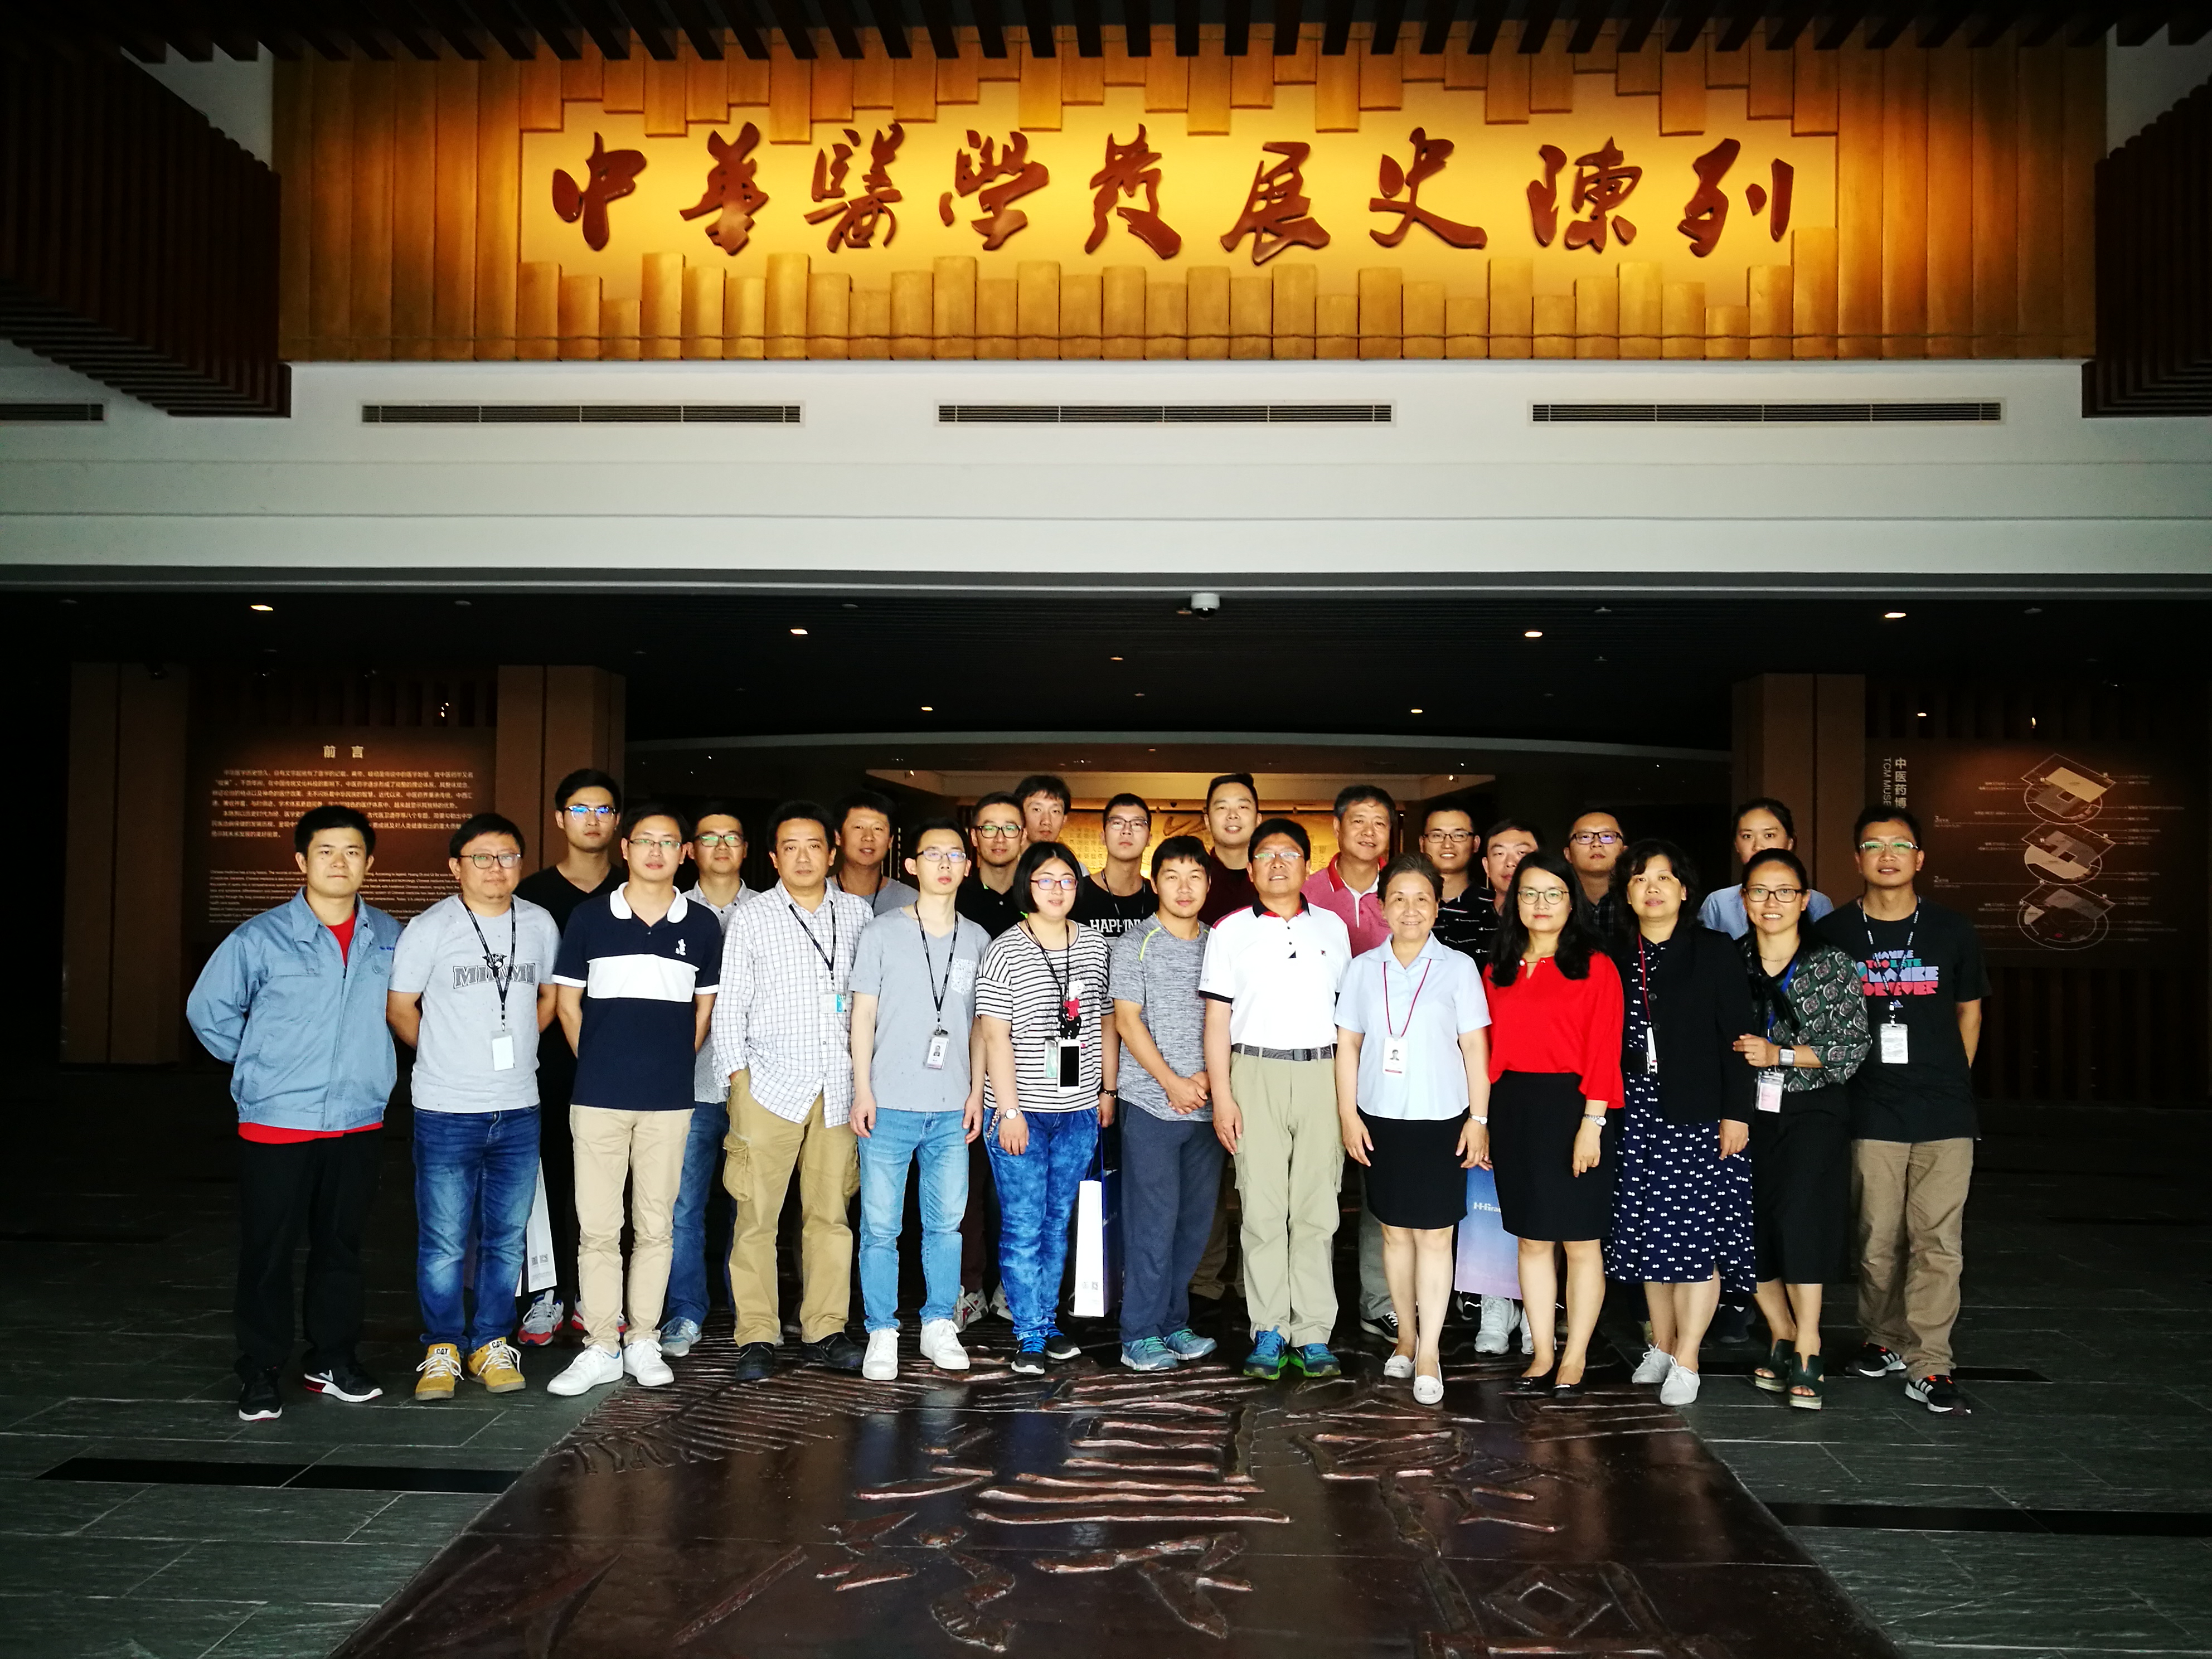 【快讯】“两学一做”学习教育在行动 ――上海中医药博物馆与华虹宏力党支部共建活动